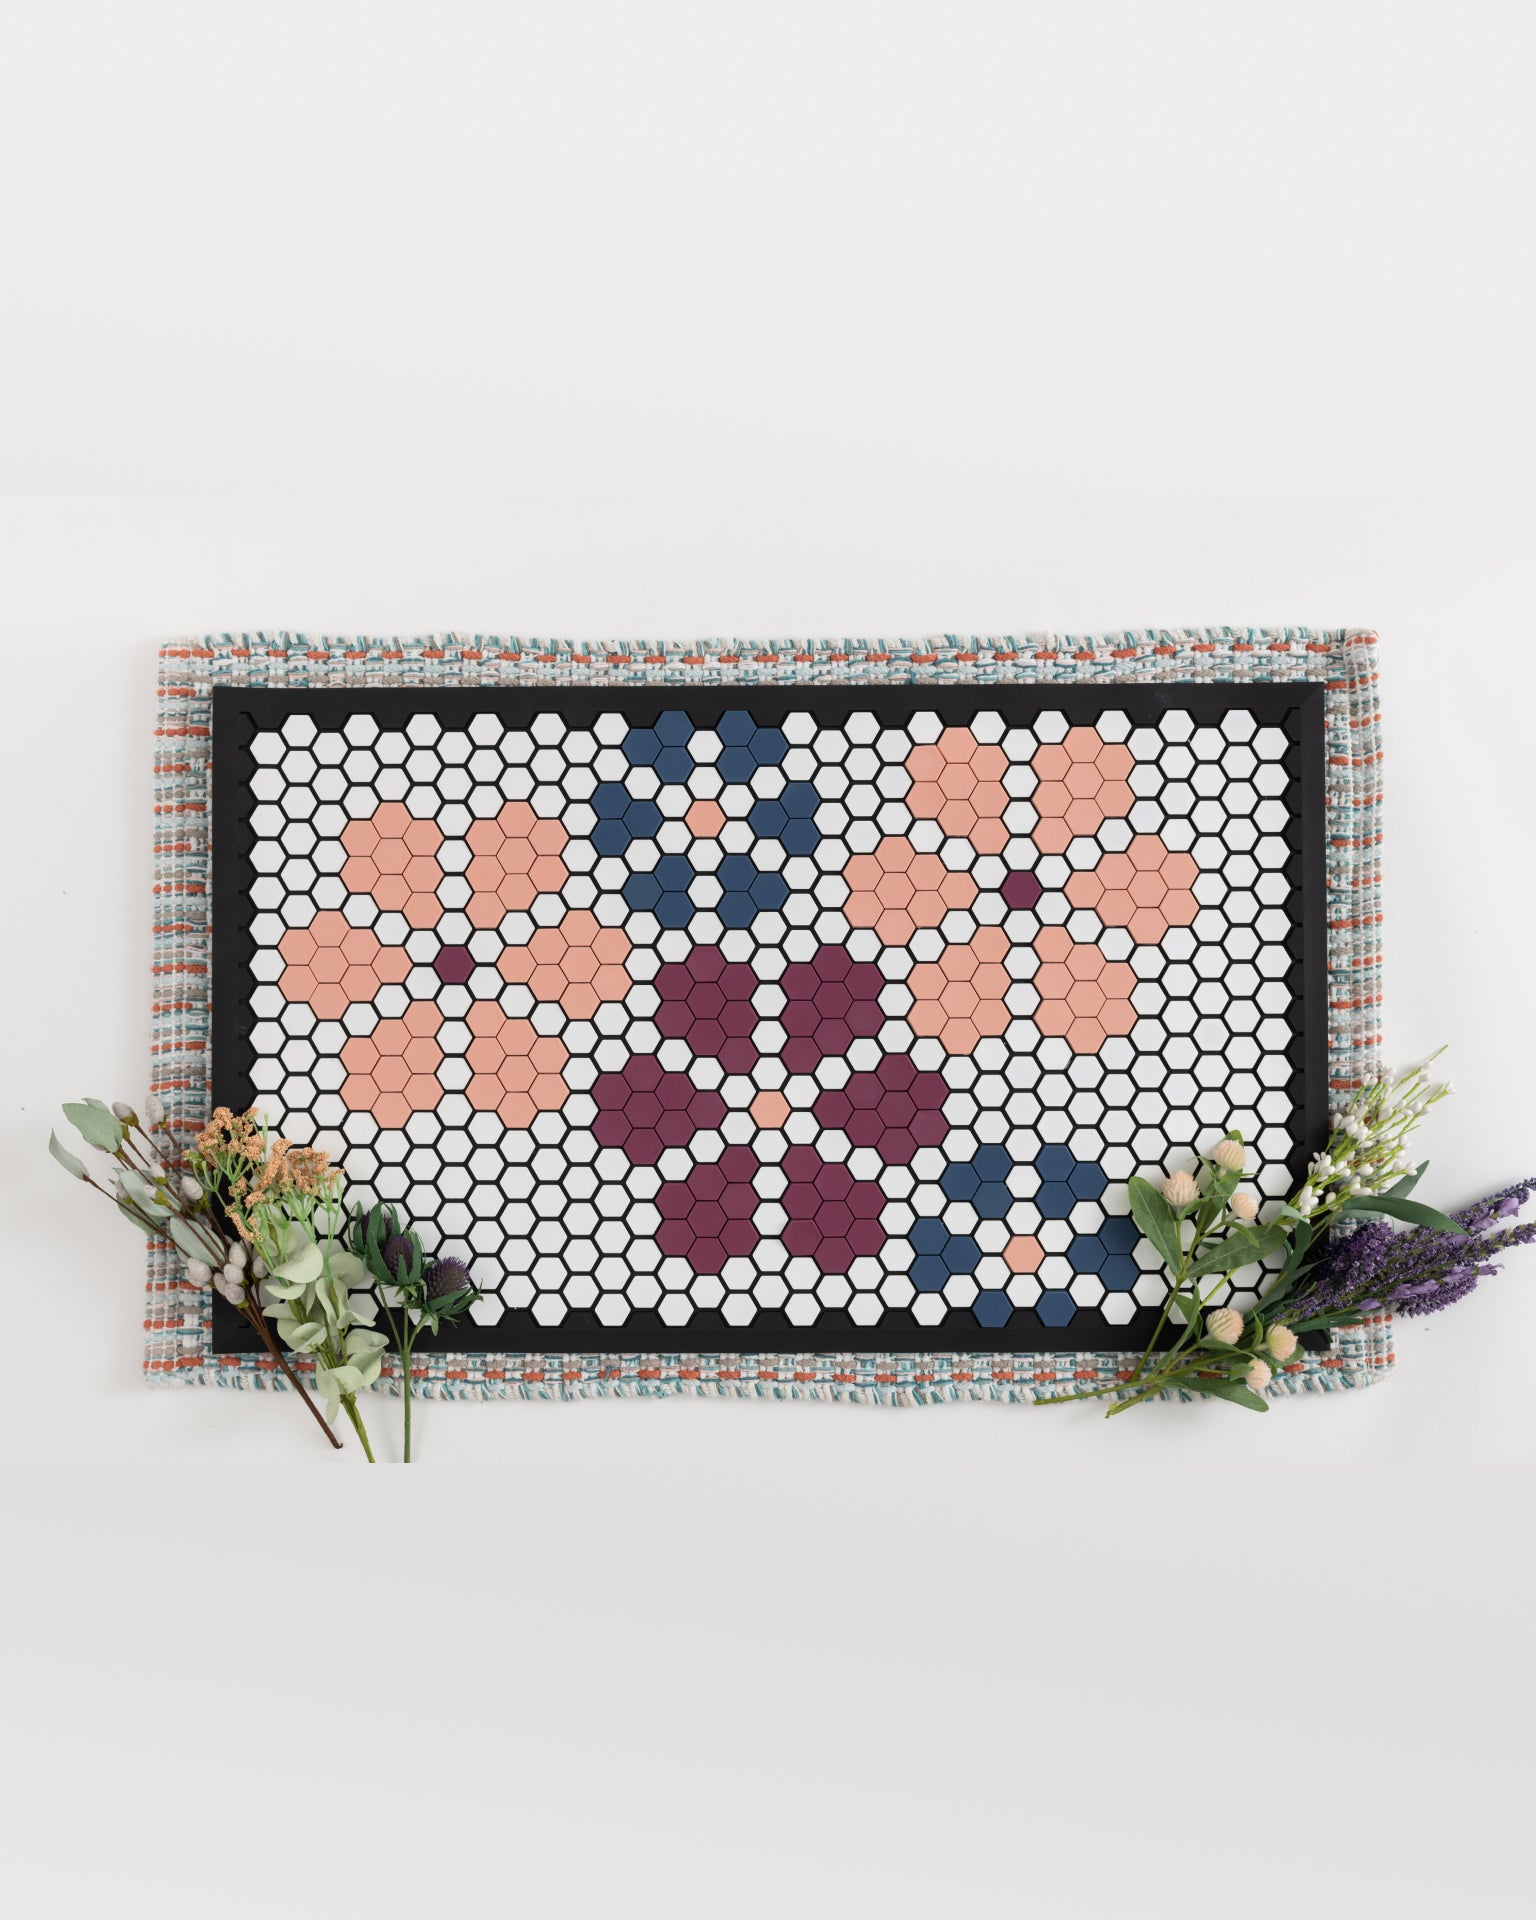 Floral / Tile Sets + Tile Mat